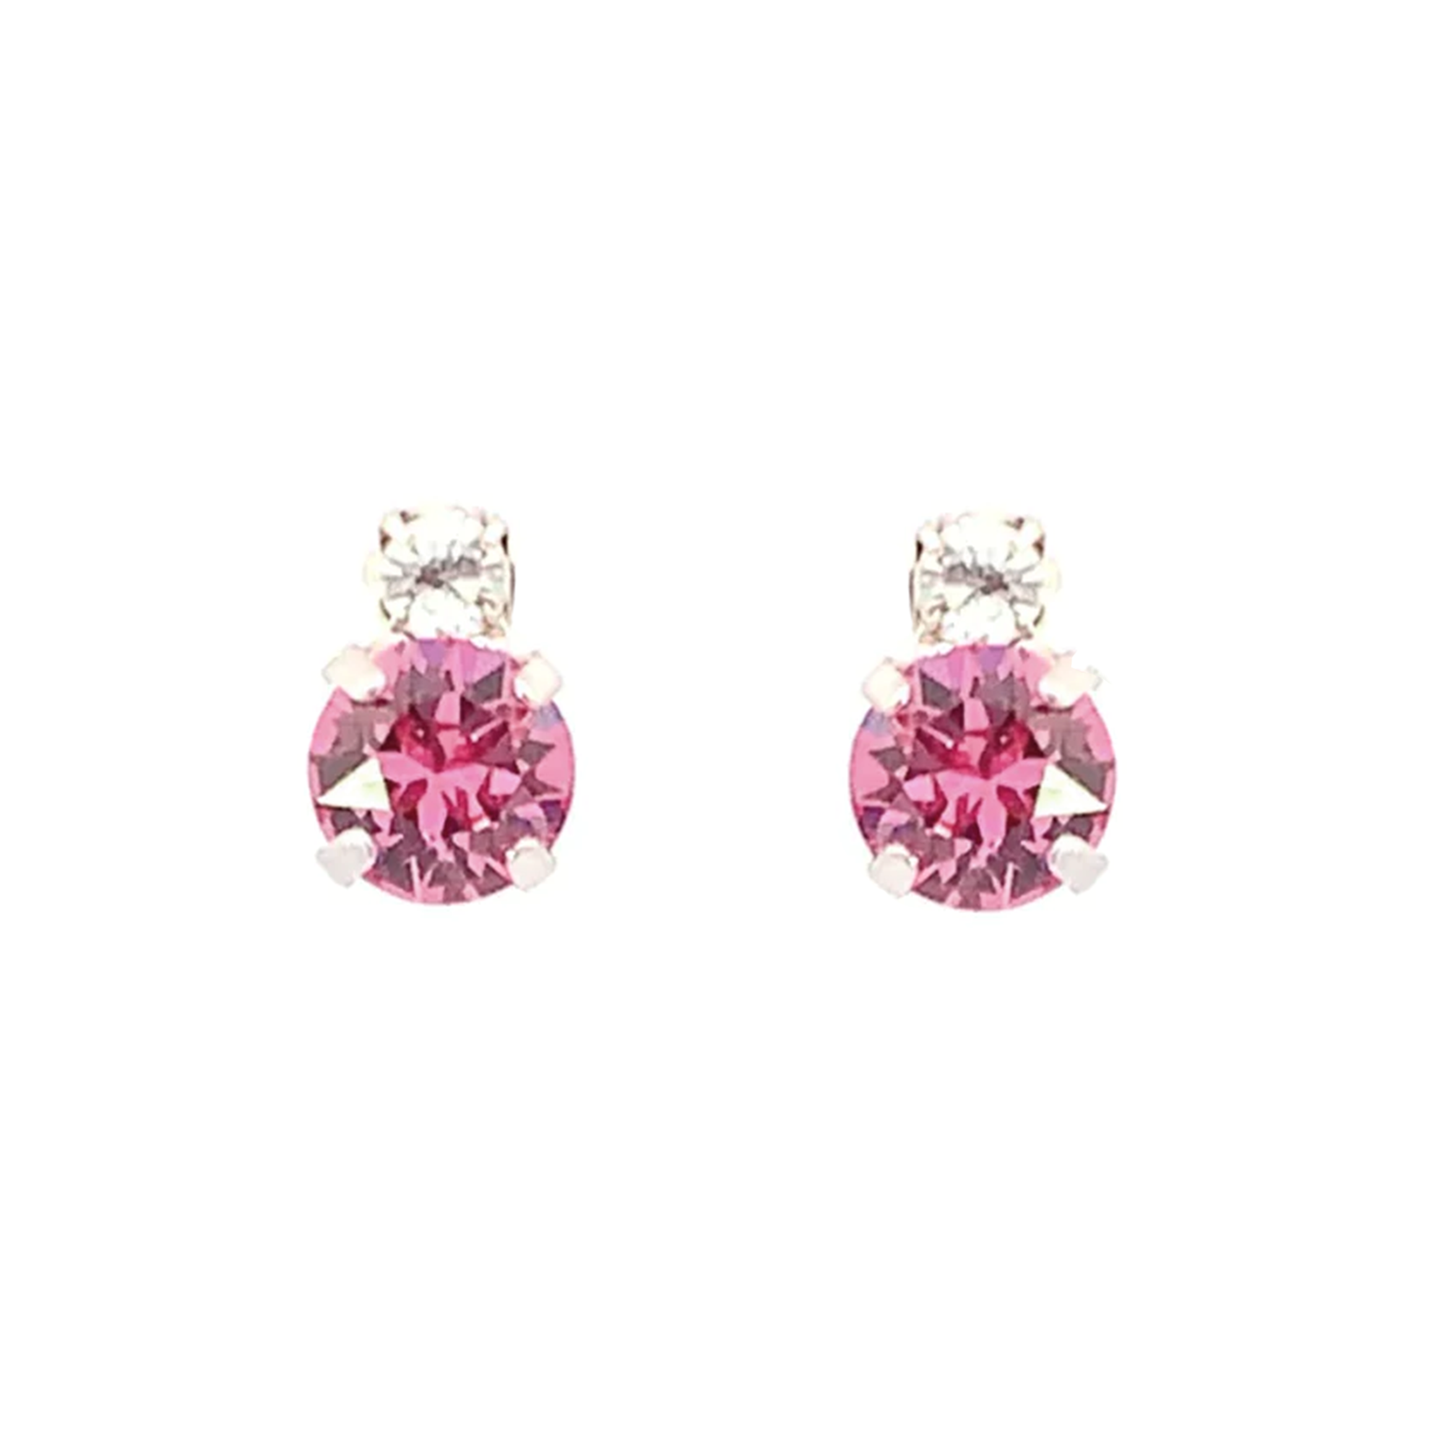 Pink tourmaline stud earrings silver